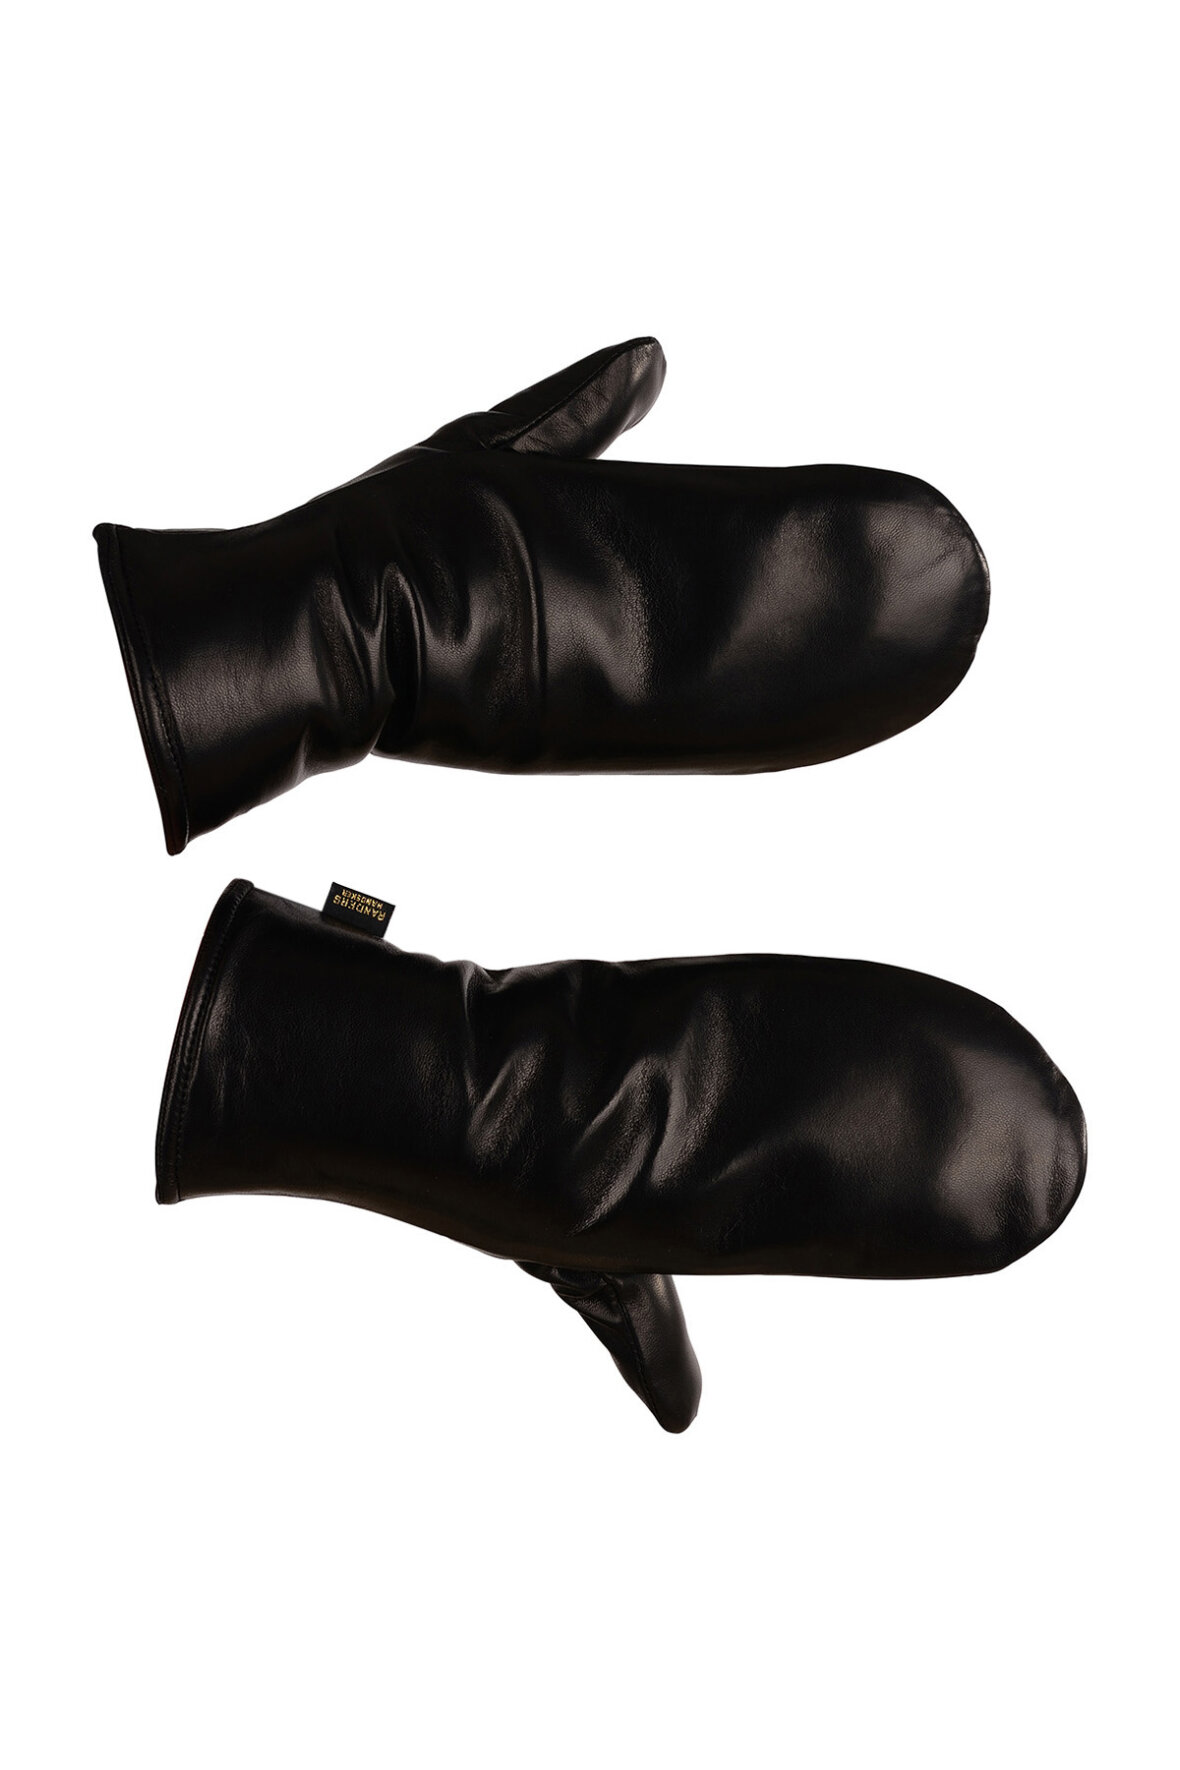 Handsker sorte luffer i exquisit kvalitet damer - Hos Lohse